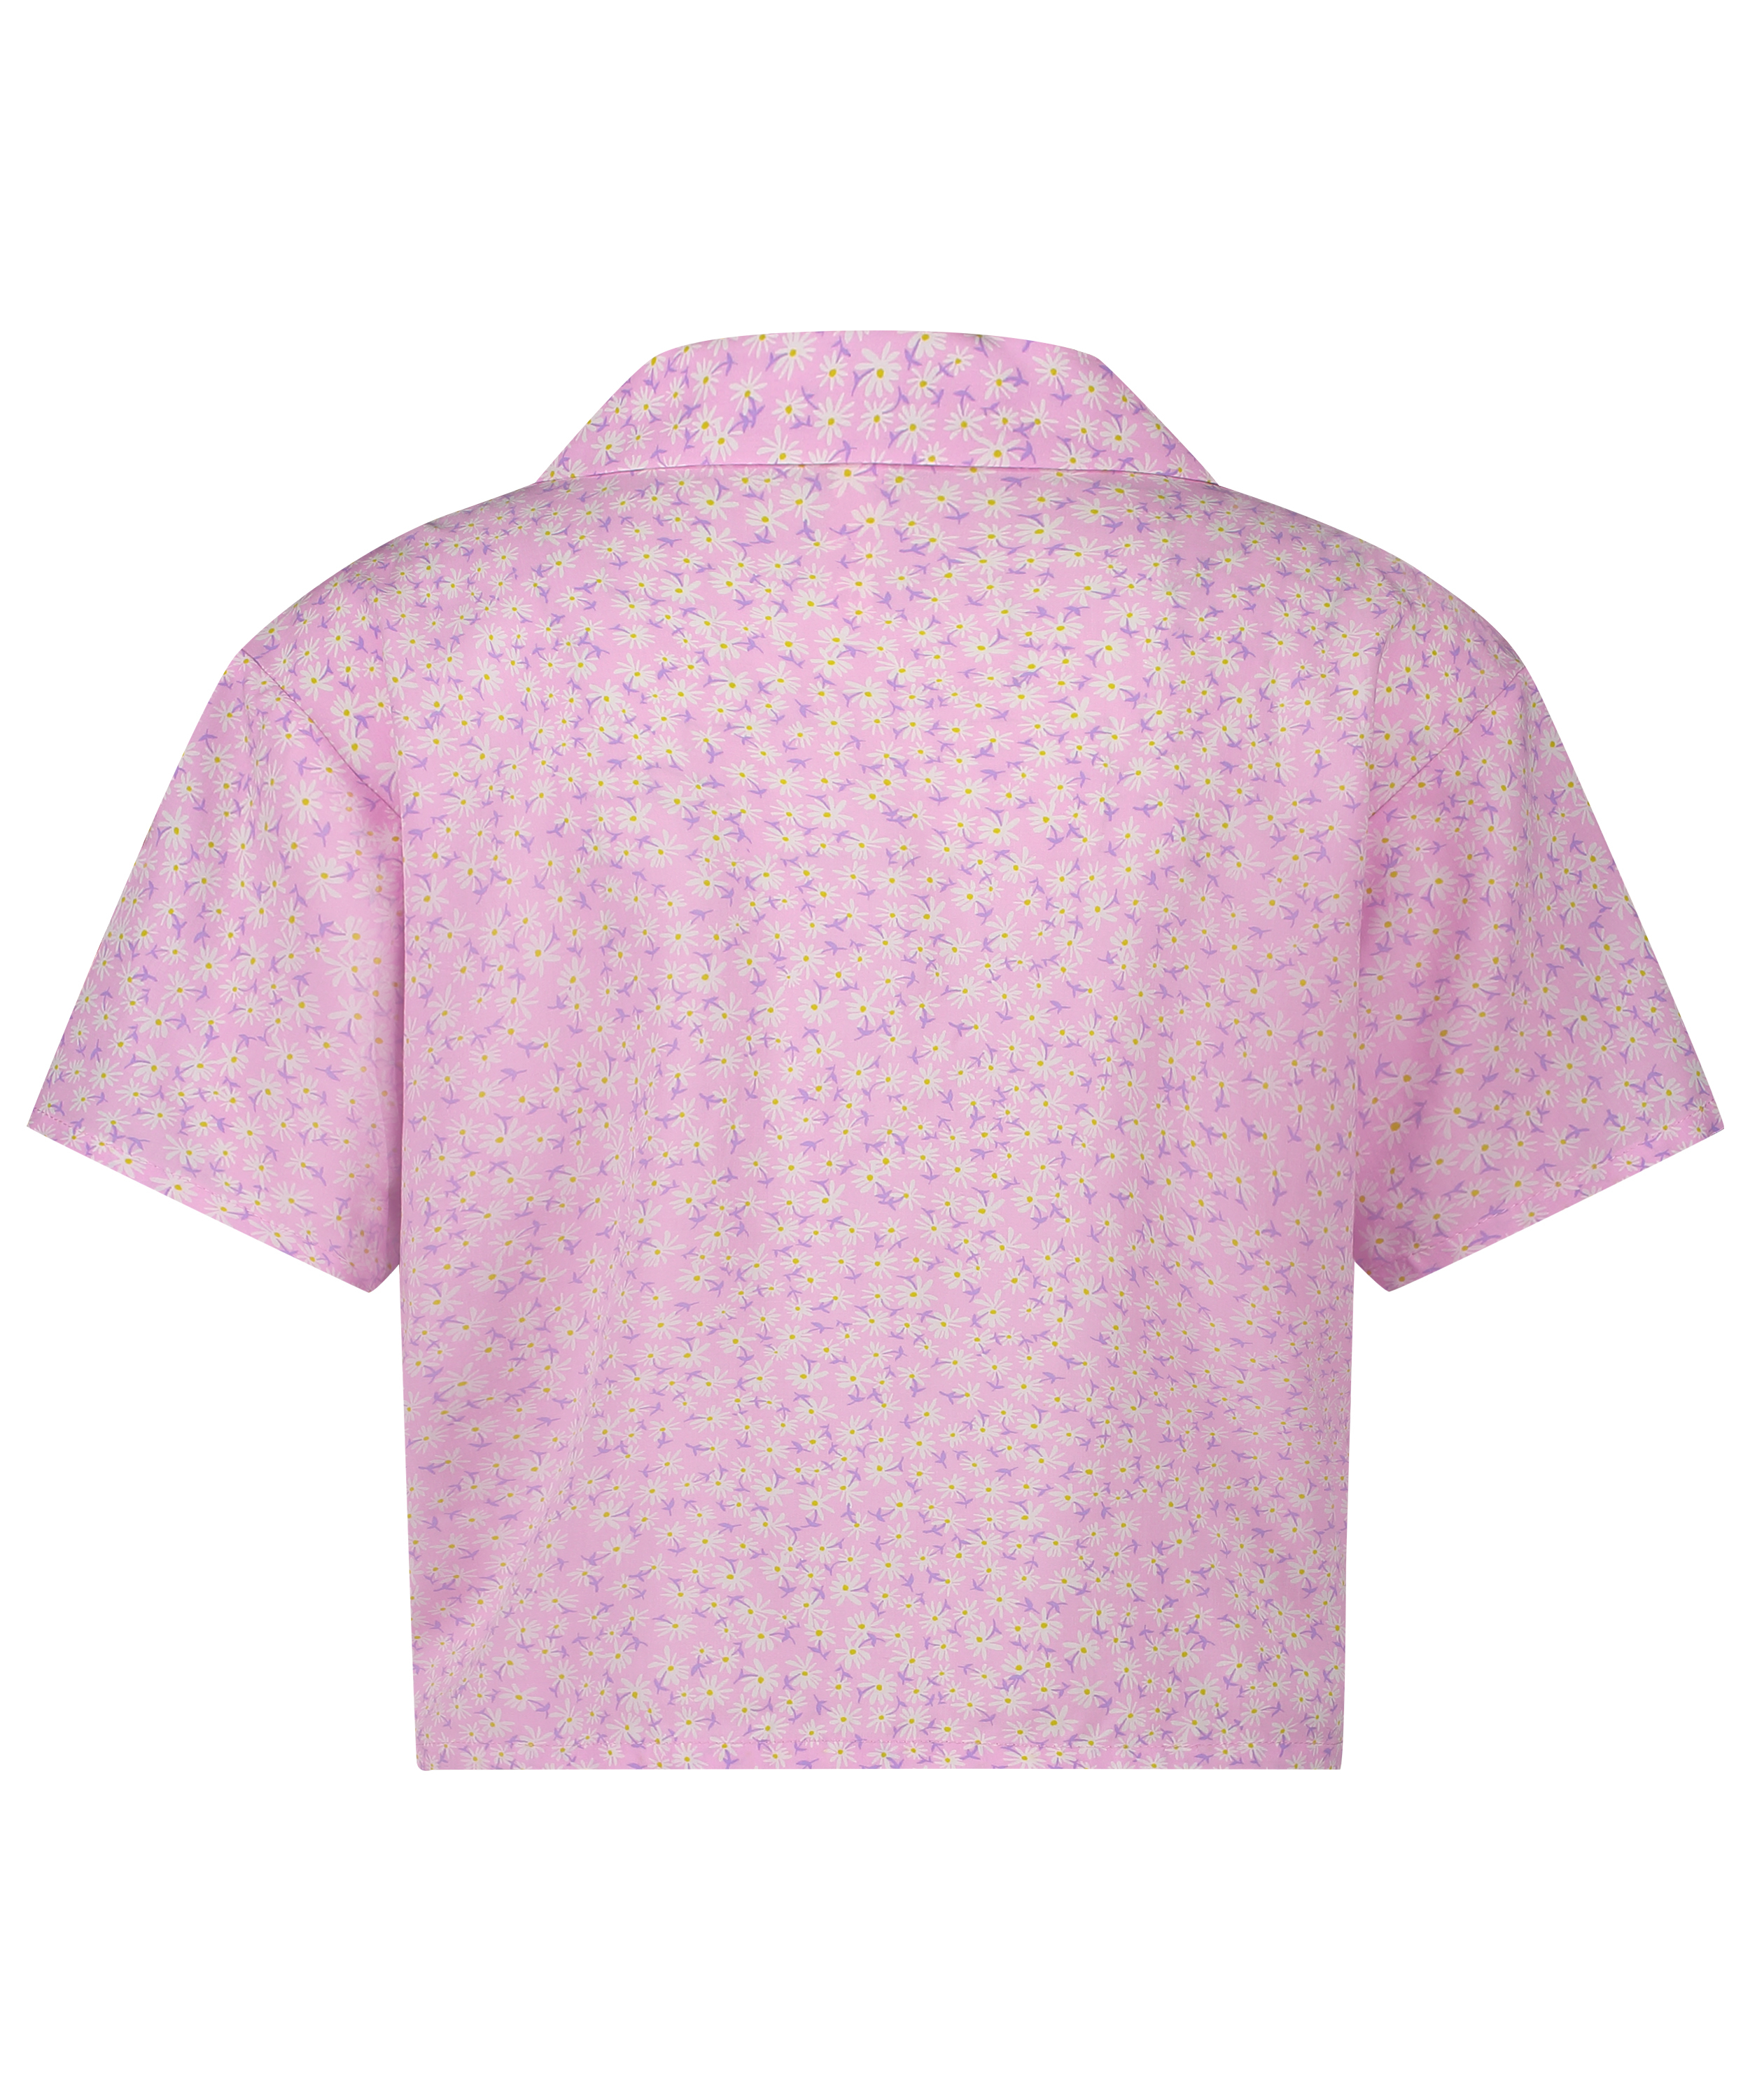 Pyjama Top, Pink, main